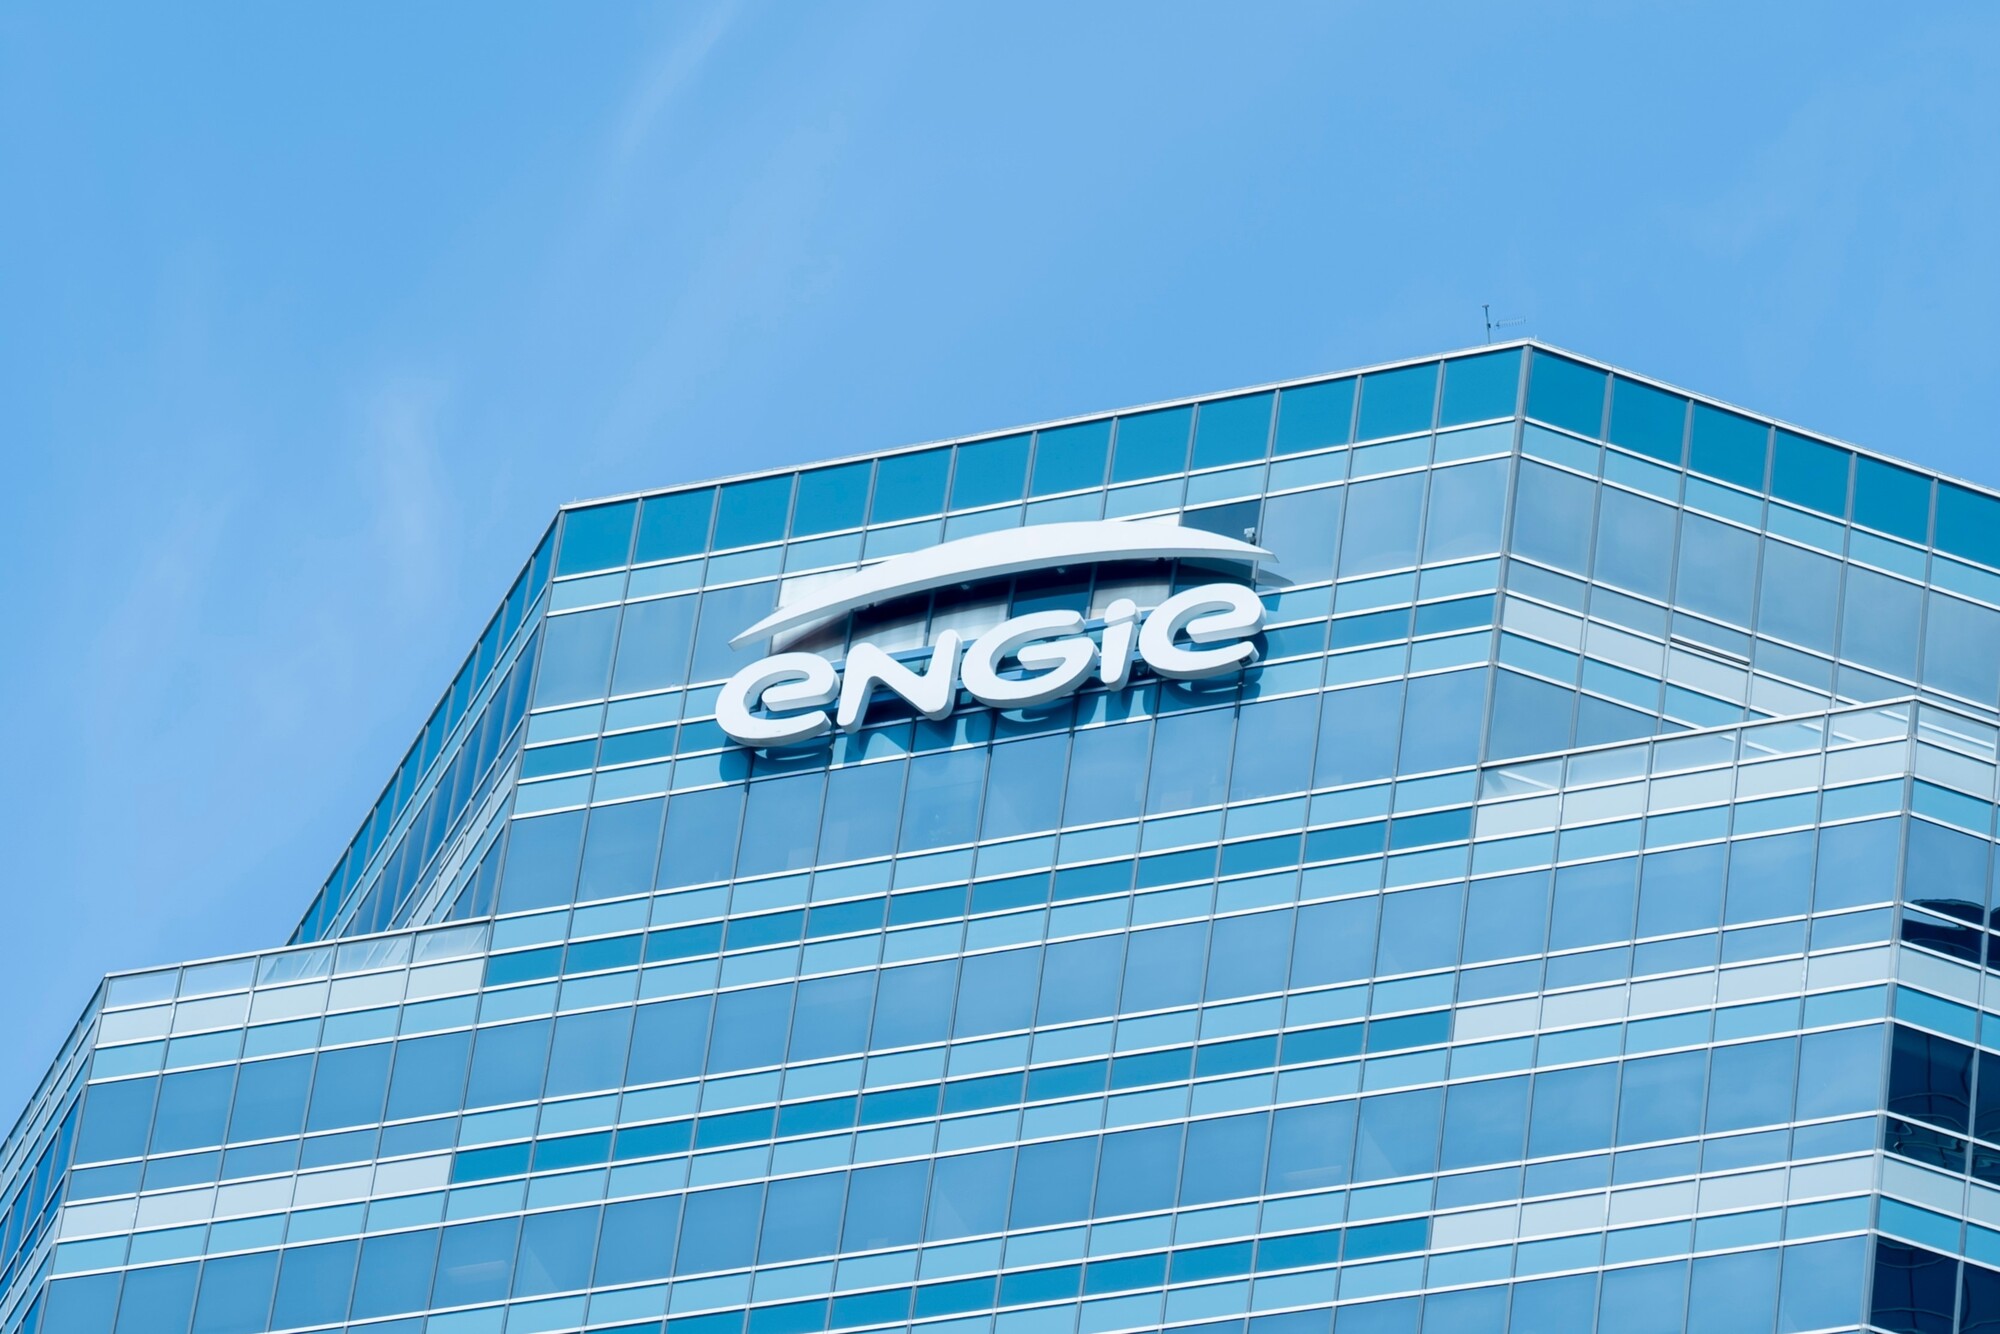 ENGIE : un groupe de hackers revendique le piratage de données sensibles de clients du fournisseur d'énergie